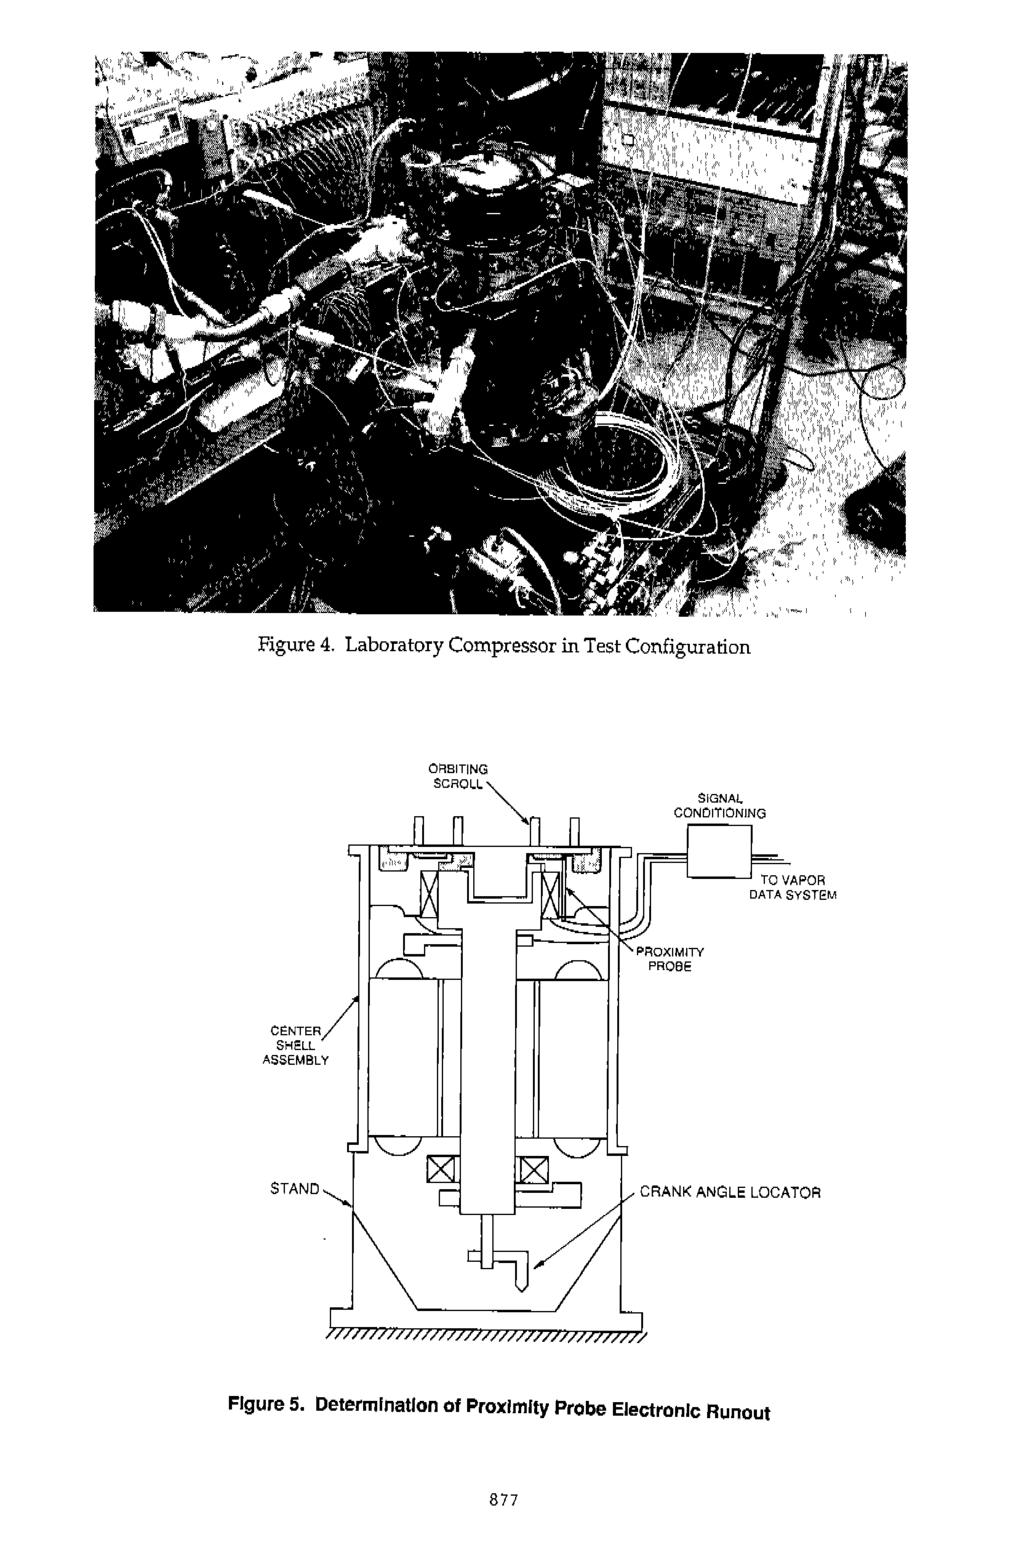 Figure 4. Laboratory Compressor in Test Configuration CE:NTER SHE.